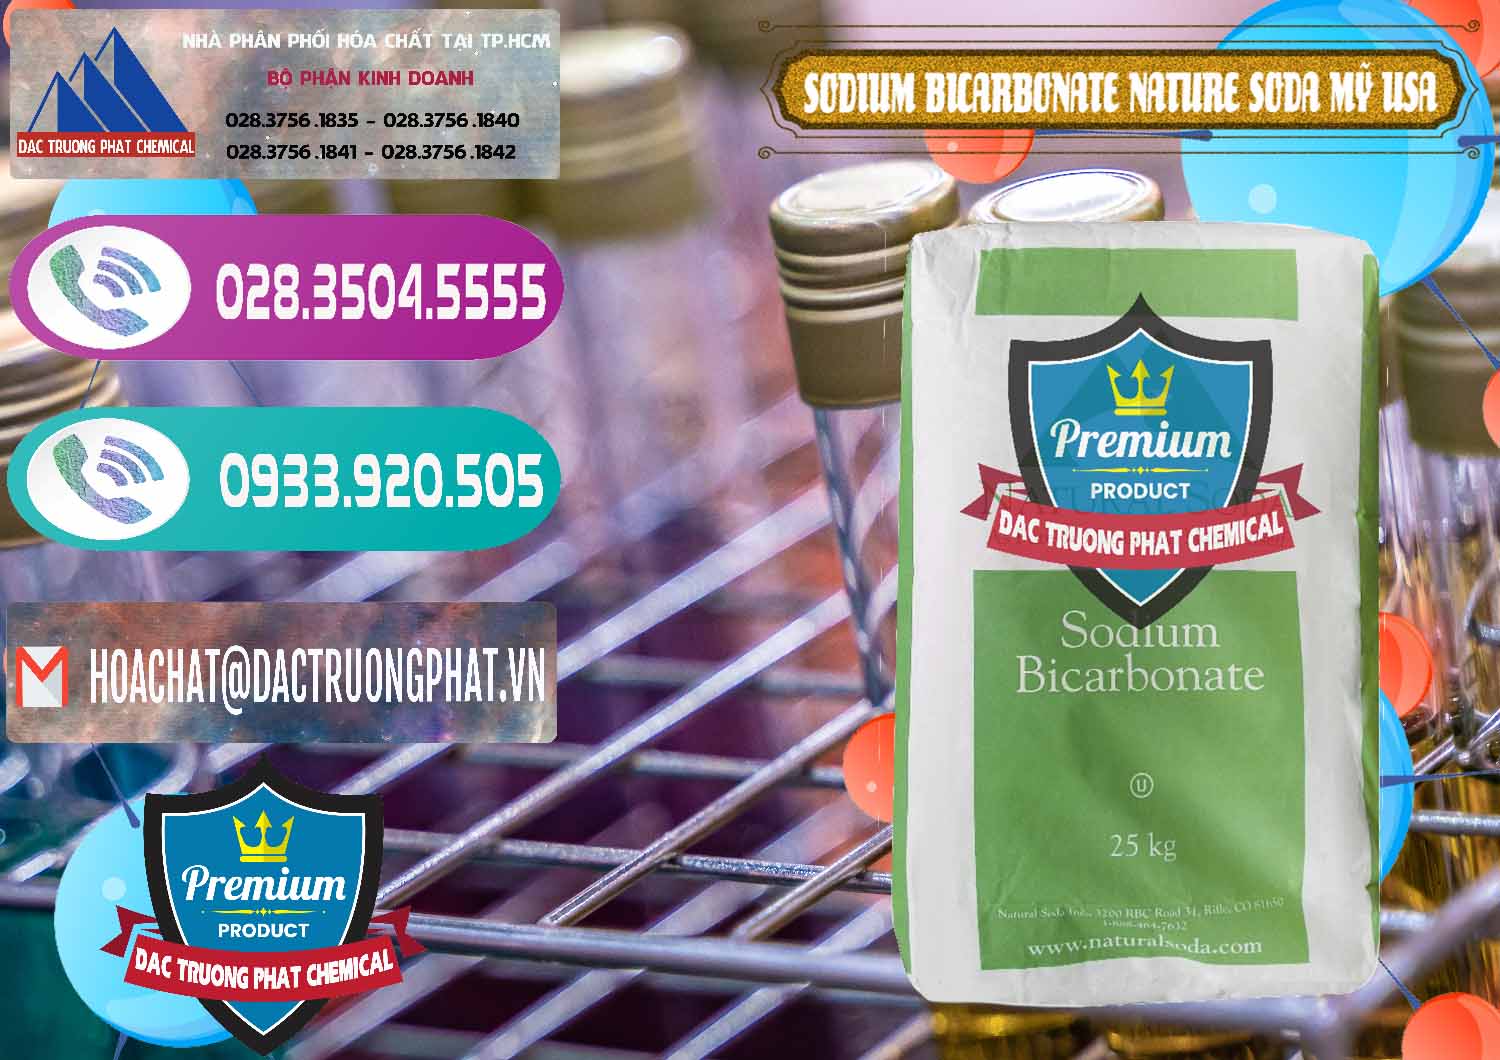 Đơn vị chuyên nhập khẩu & bán Sodium Bicarbonate – Bicar NaHCO3 Food Grade Nature Soda Mỹ USA - 0256 - Nhà cung cấp ( phân phối ) hóa chất tại TP.HCM - hoachatxulynuoc.com